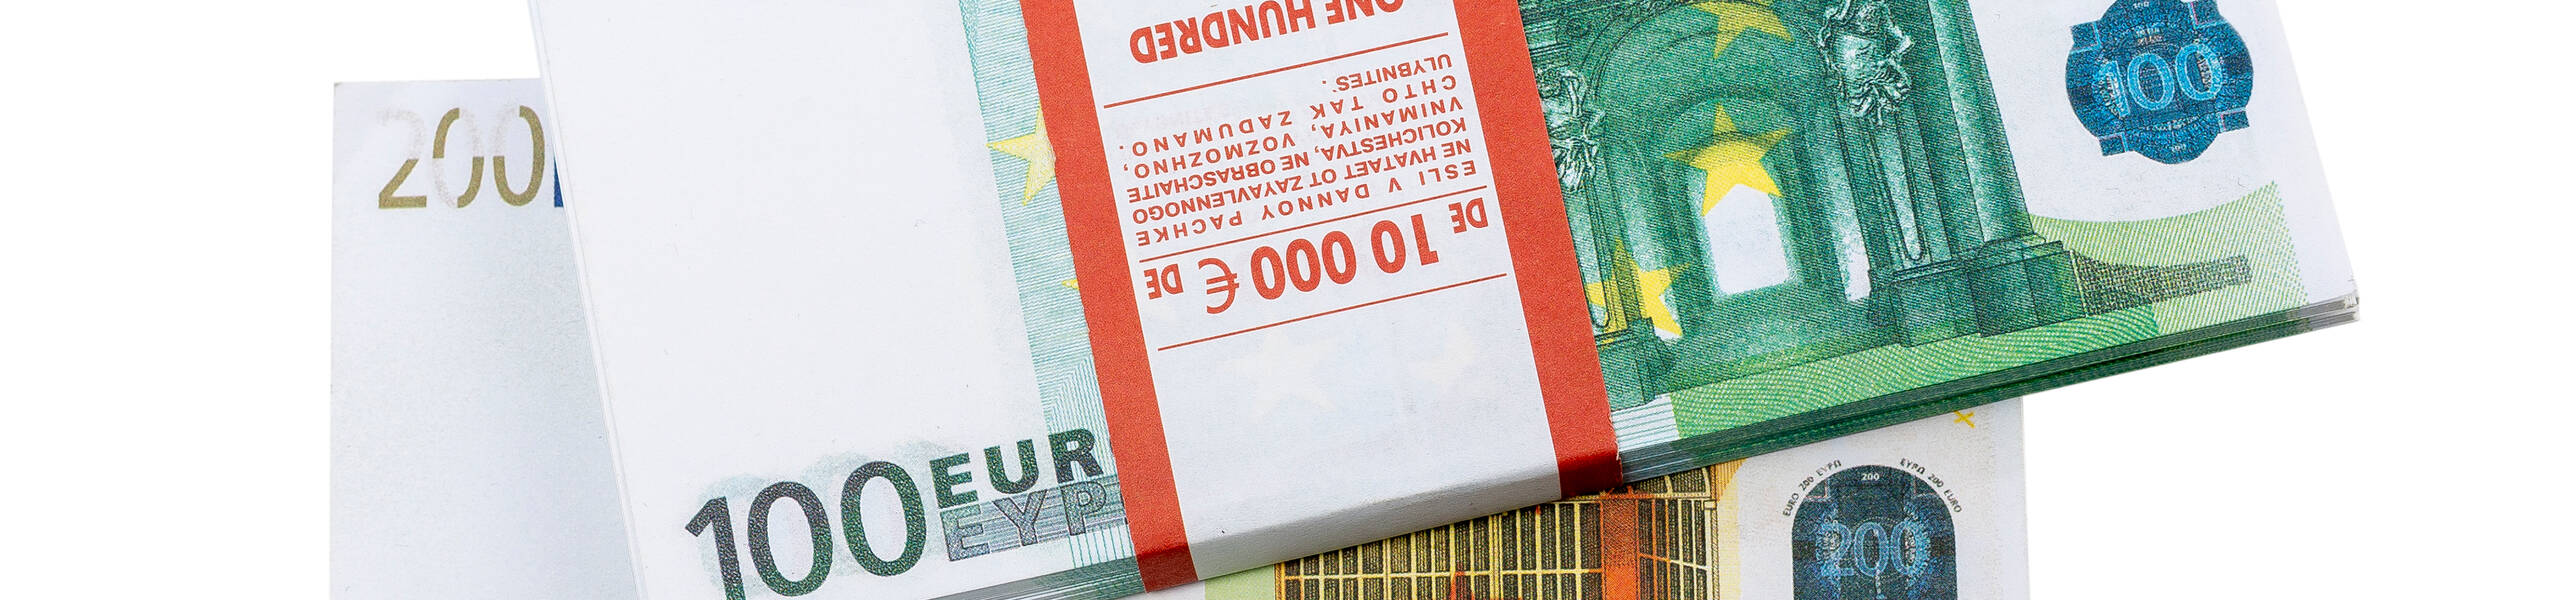 عمليات شراء اليورو تُحقق أكثر من 200 نقطة!